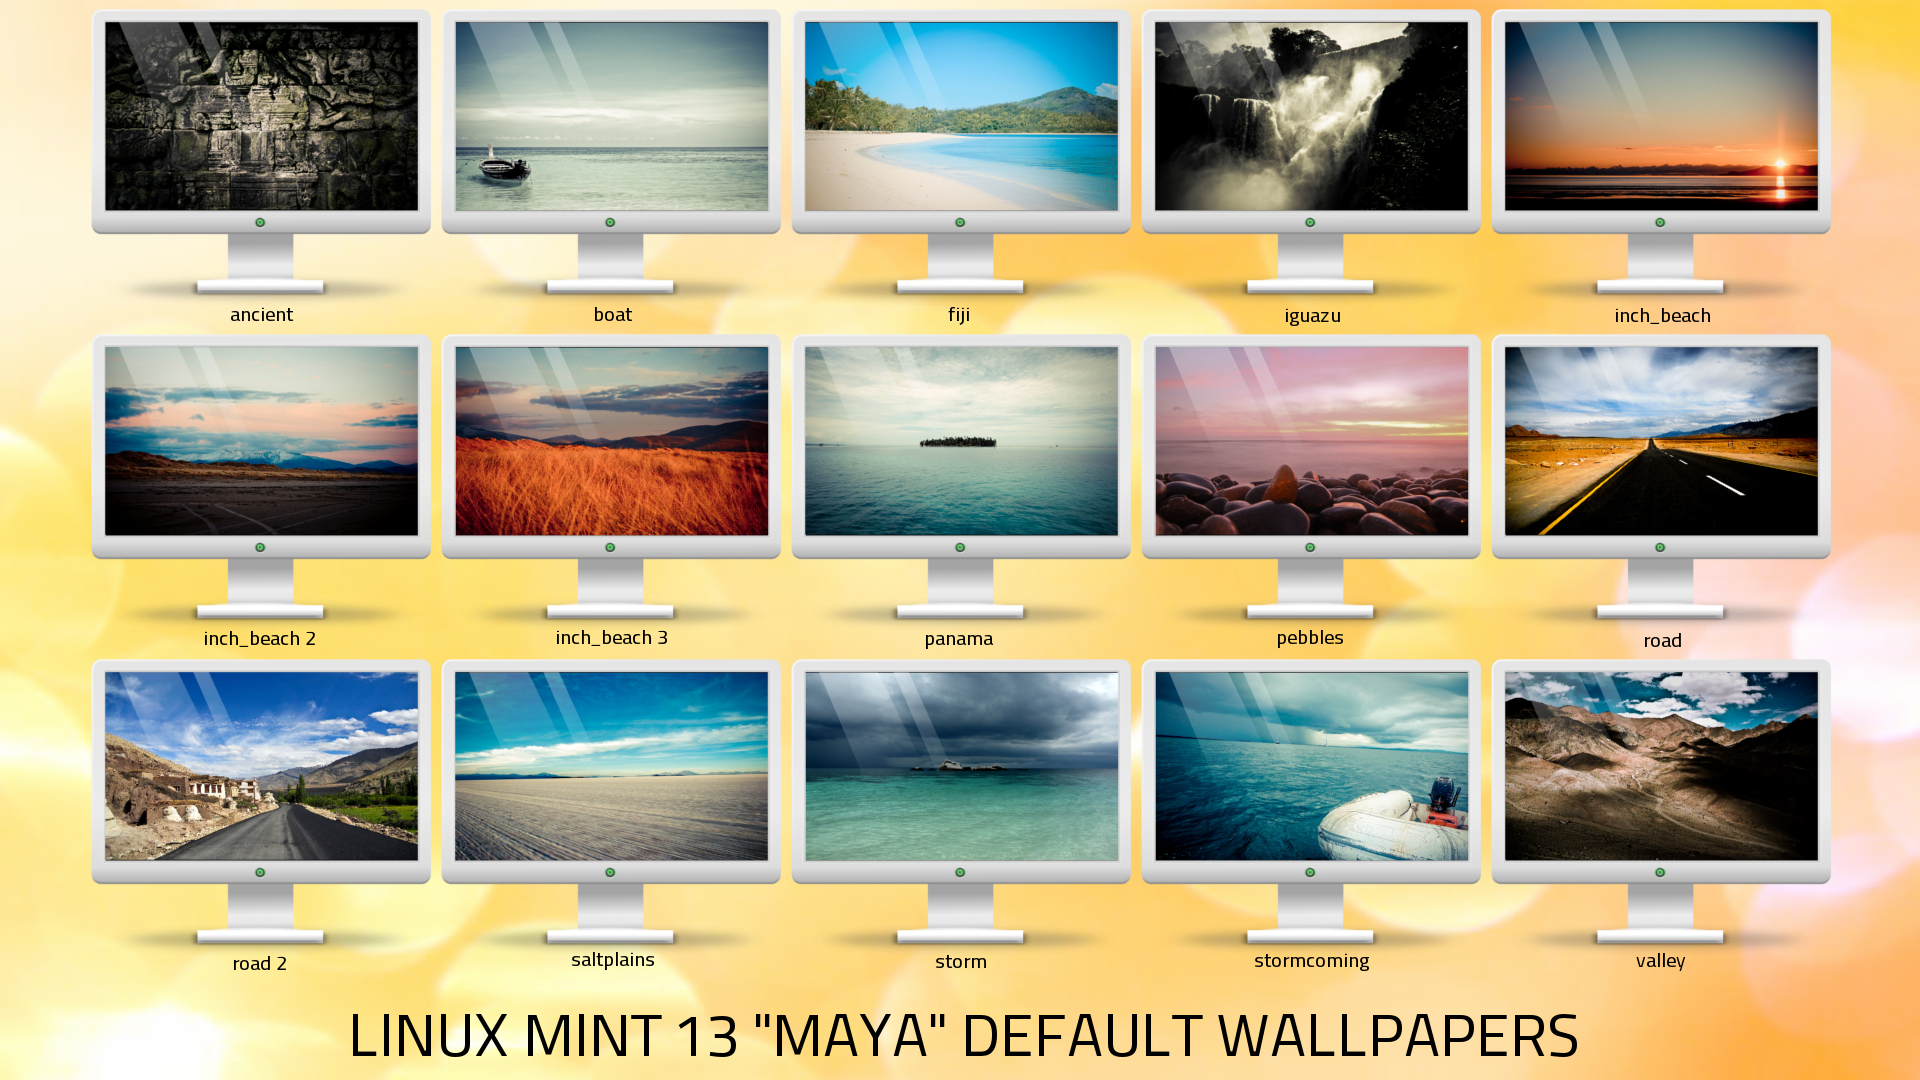 Bộ sưu tập hình nền Linux Mint là một điểm đến không thể bỏ qua với những ai yêu thích sự độc đáo và sáng tạo, với nhiều lựa chọn đa dạng, bạn sẽ tìm được một hình nền hoàn hảo cho mình.